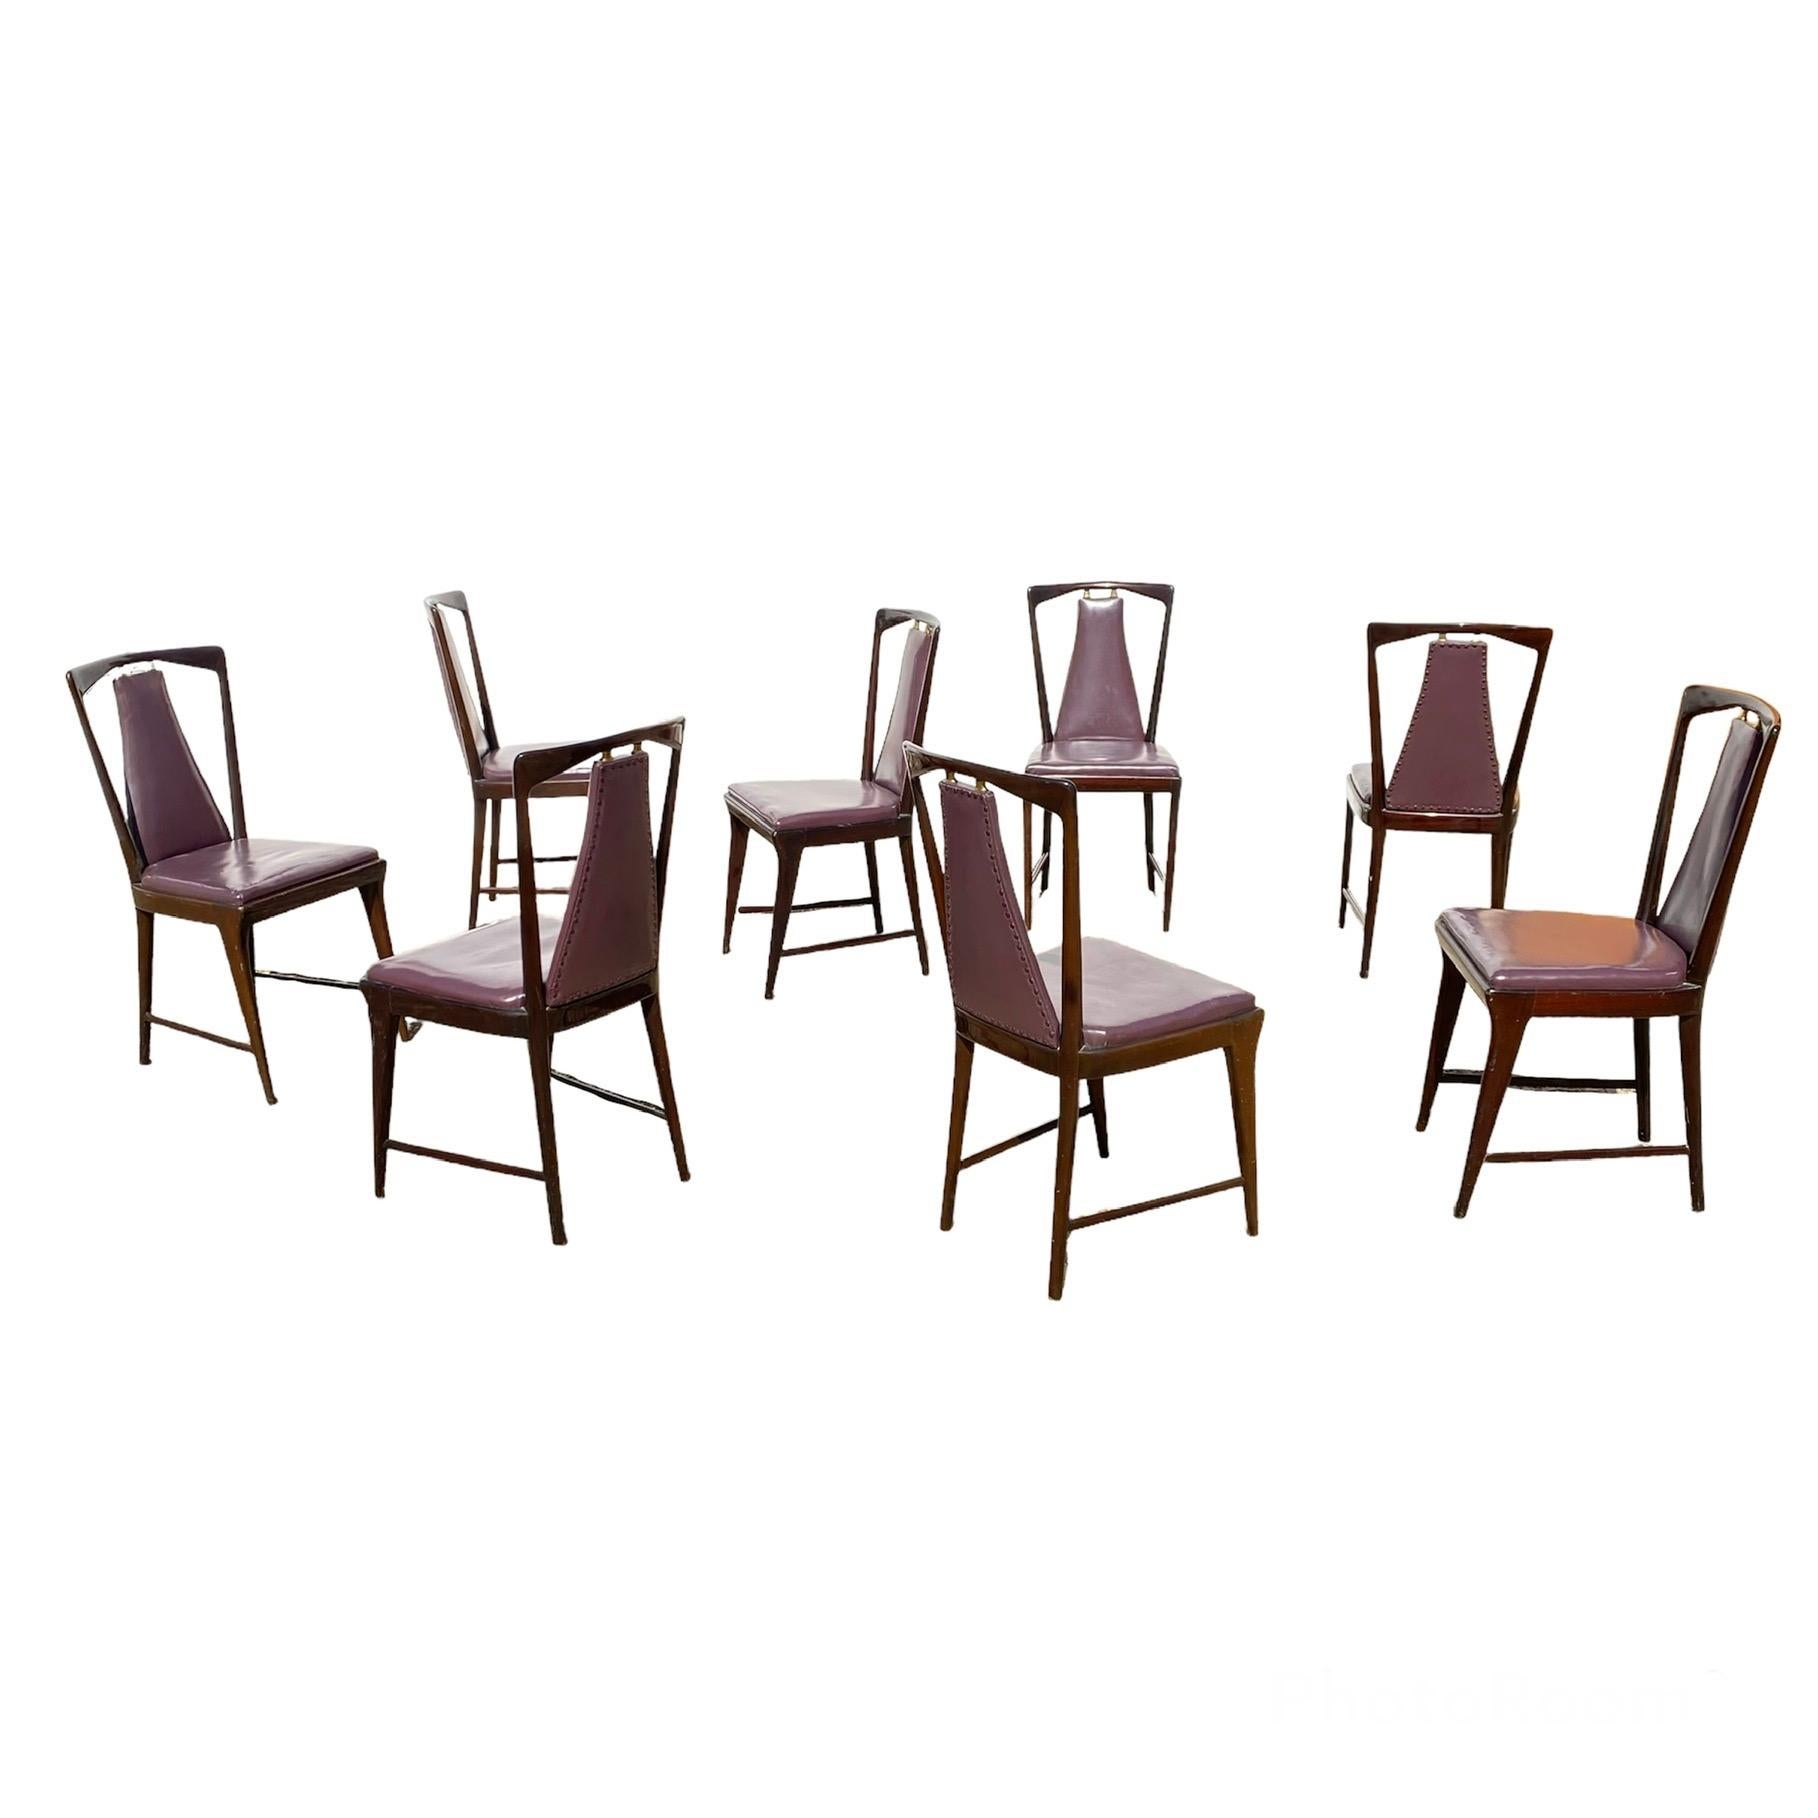 Mid-Century Modern Set of 8 Dining Chairs Designed by Osvaldo Borsani for Atelier Borsani Varedo